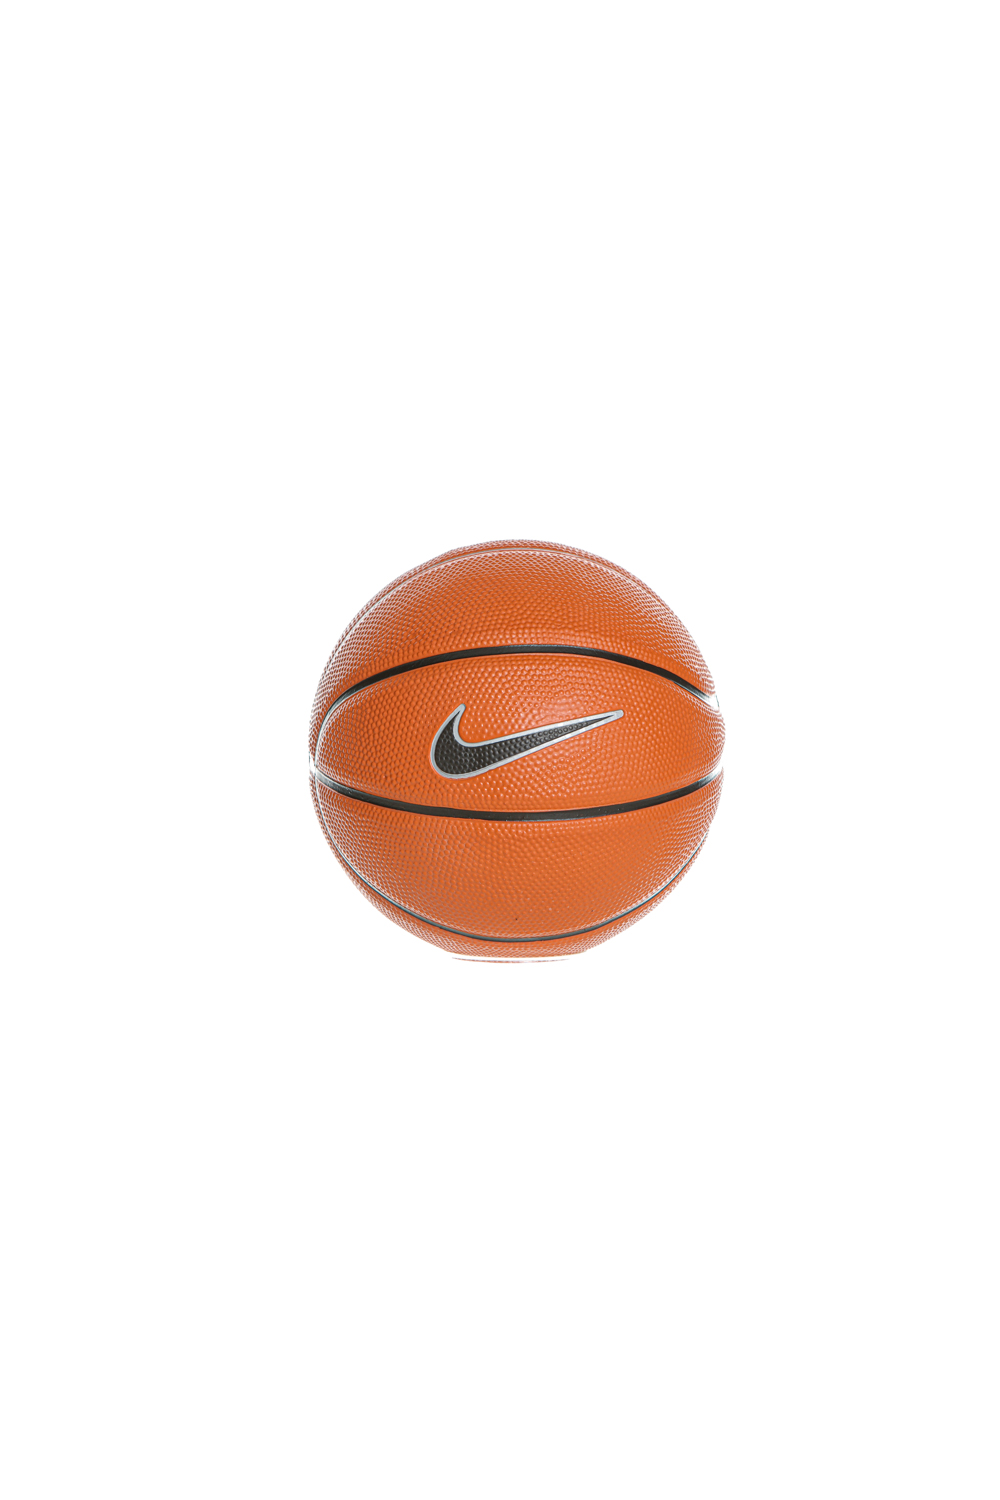 NIKE – Μπάλα basketball n3 NIKE SKILLS N.KI.08.03 πορτοκαλί μαύρη 1581510.0-O171